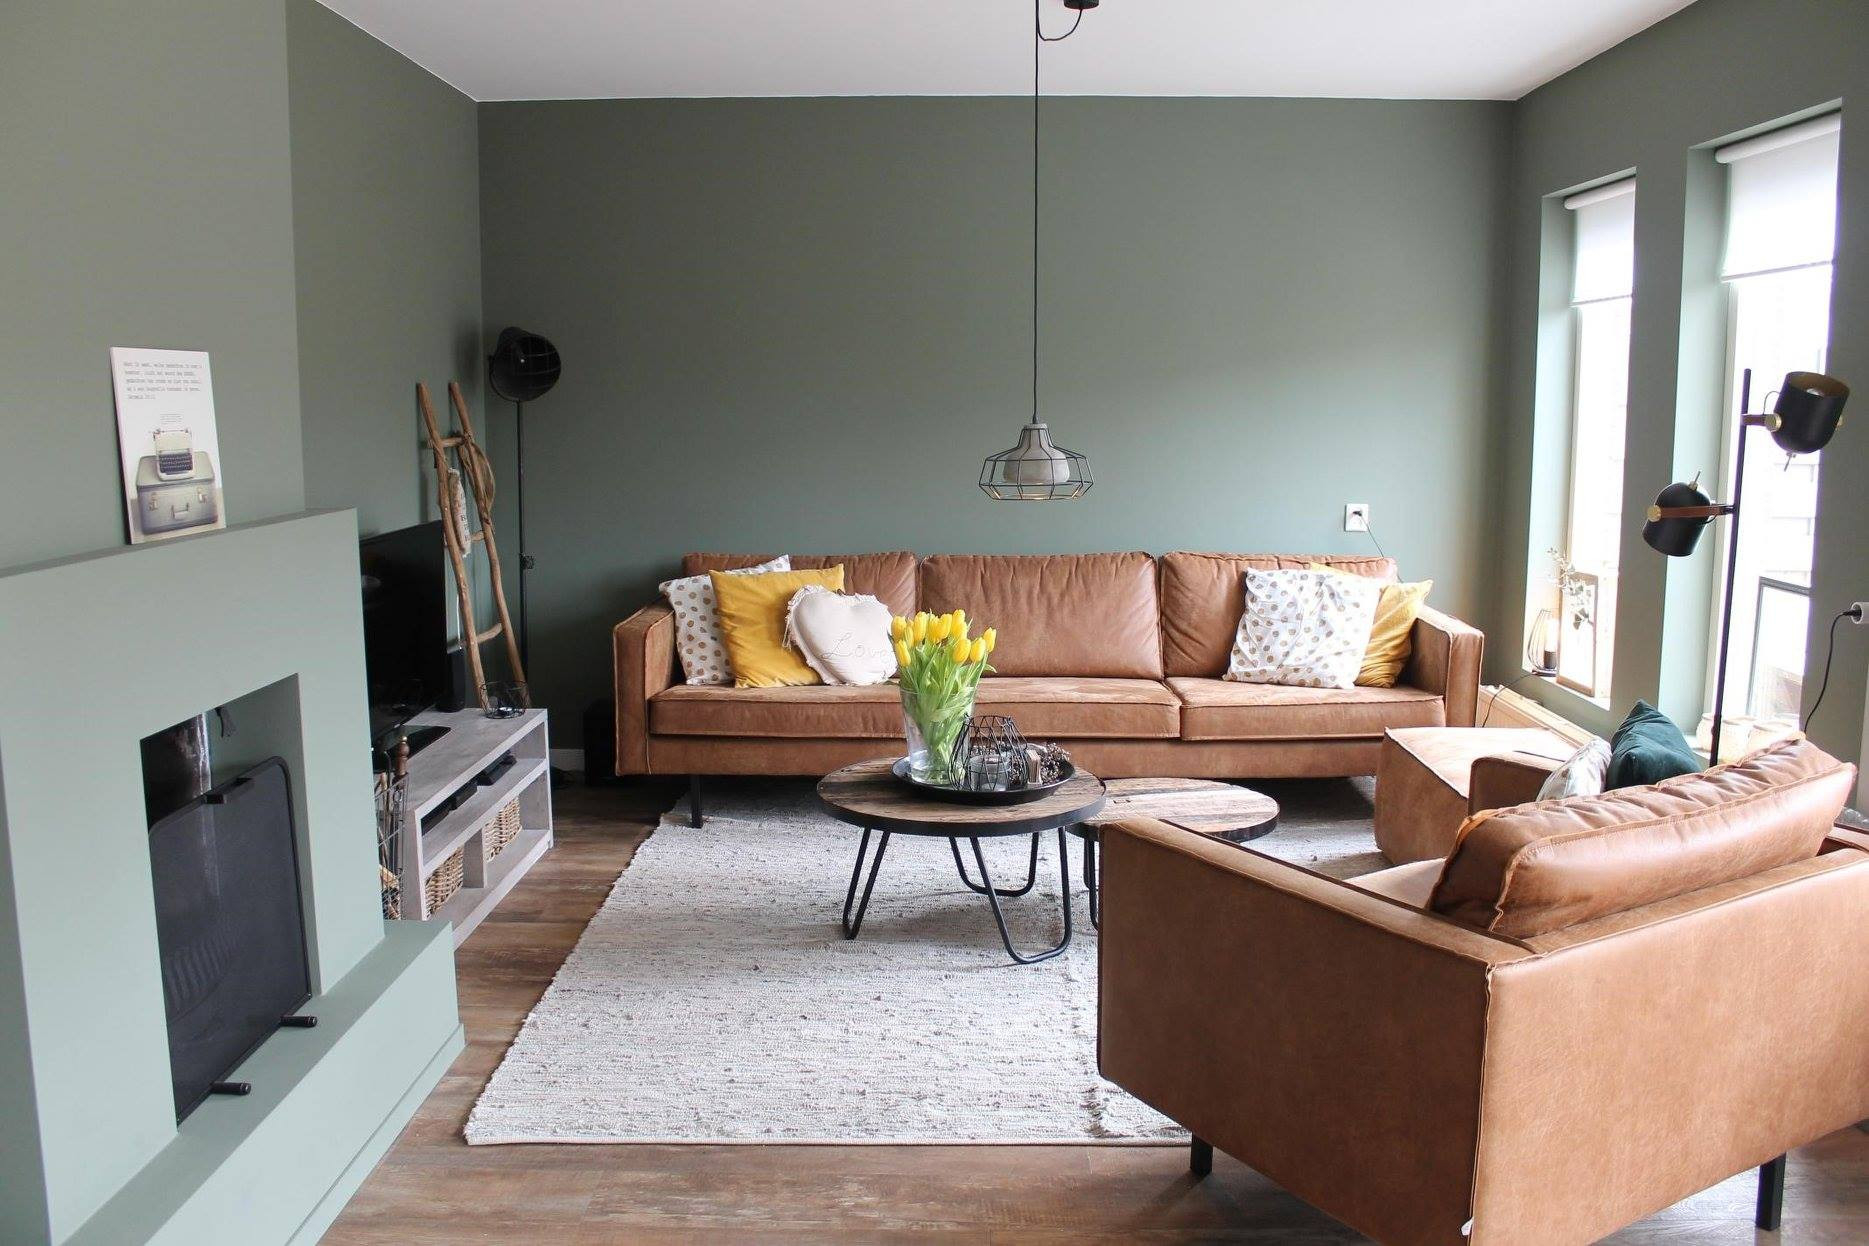 Wohnzimmer Wandgestaltung: Ideen &amp; Die Richtige Farbwahl! throughout Wohnzimmer Wand Grün